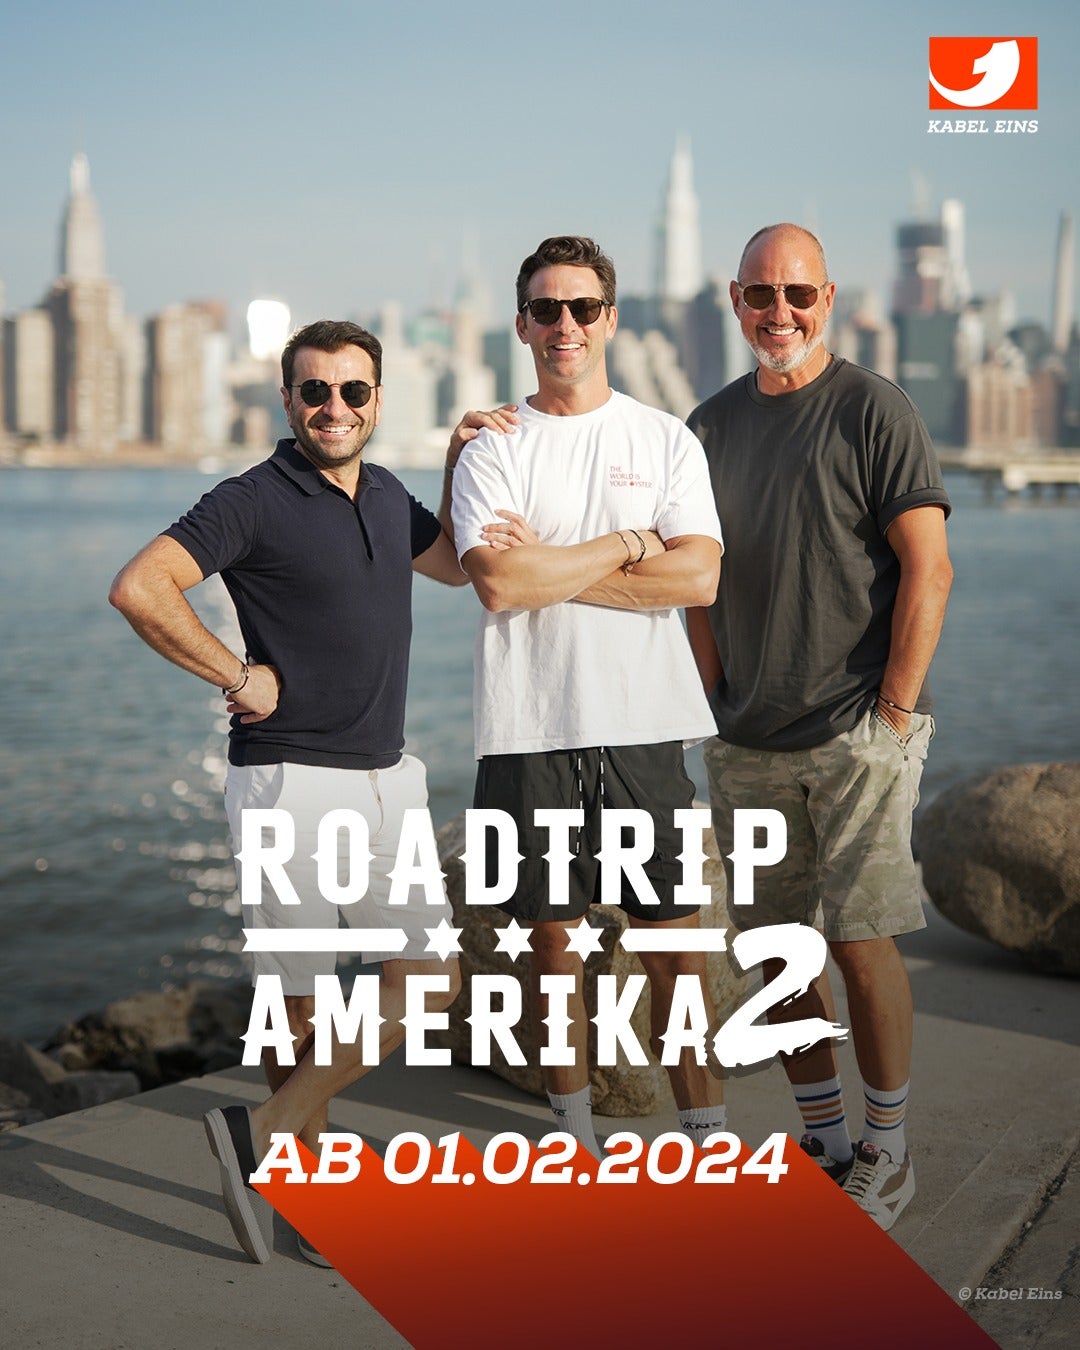 TV ratings for Roadtrip Amerika - Drei Spitzenköche Auf Vier Rädern in Colombia. Kabel Eins TV series